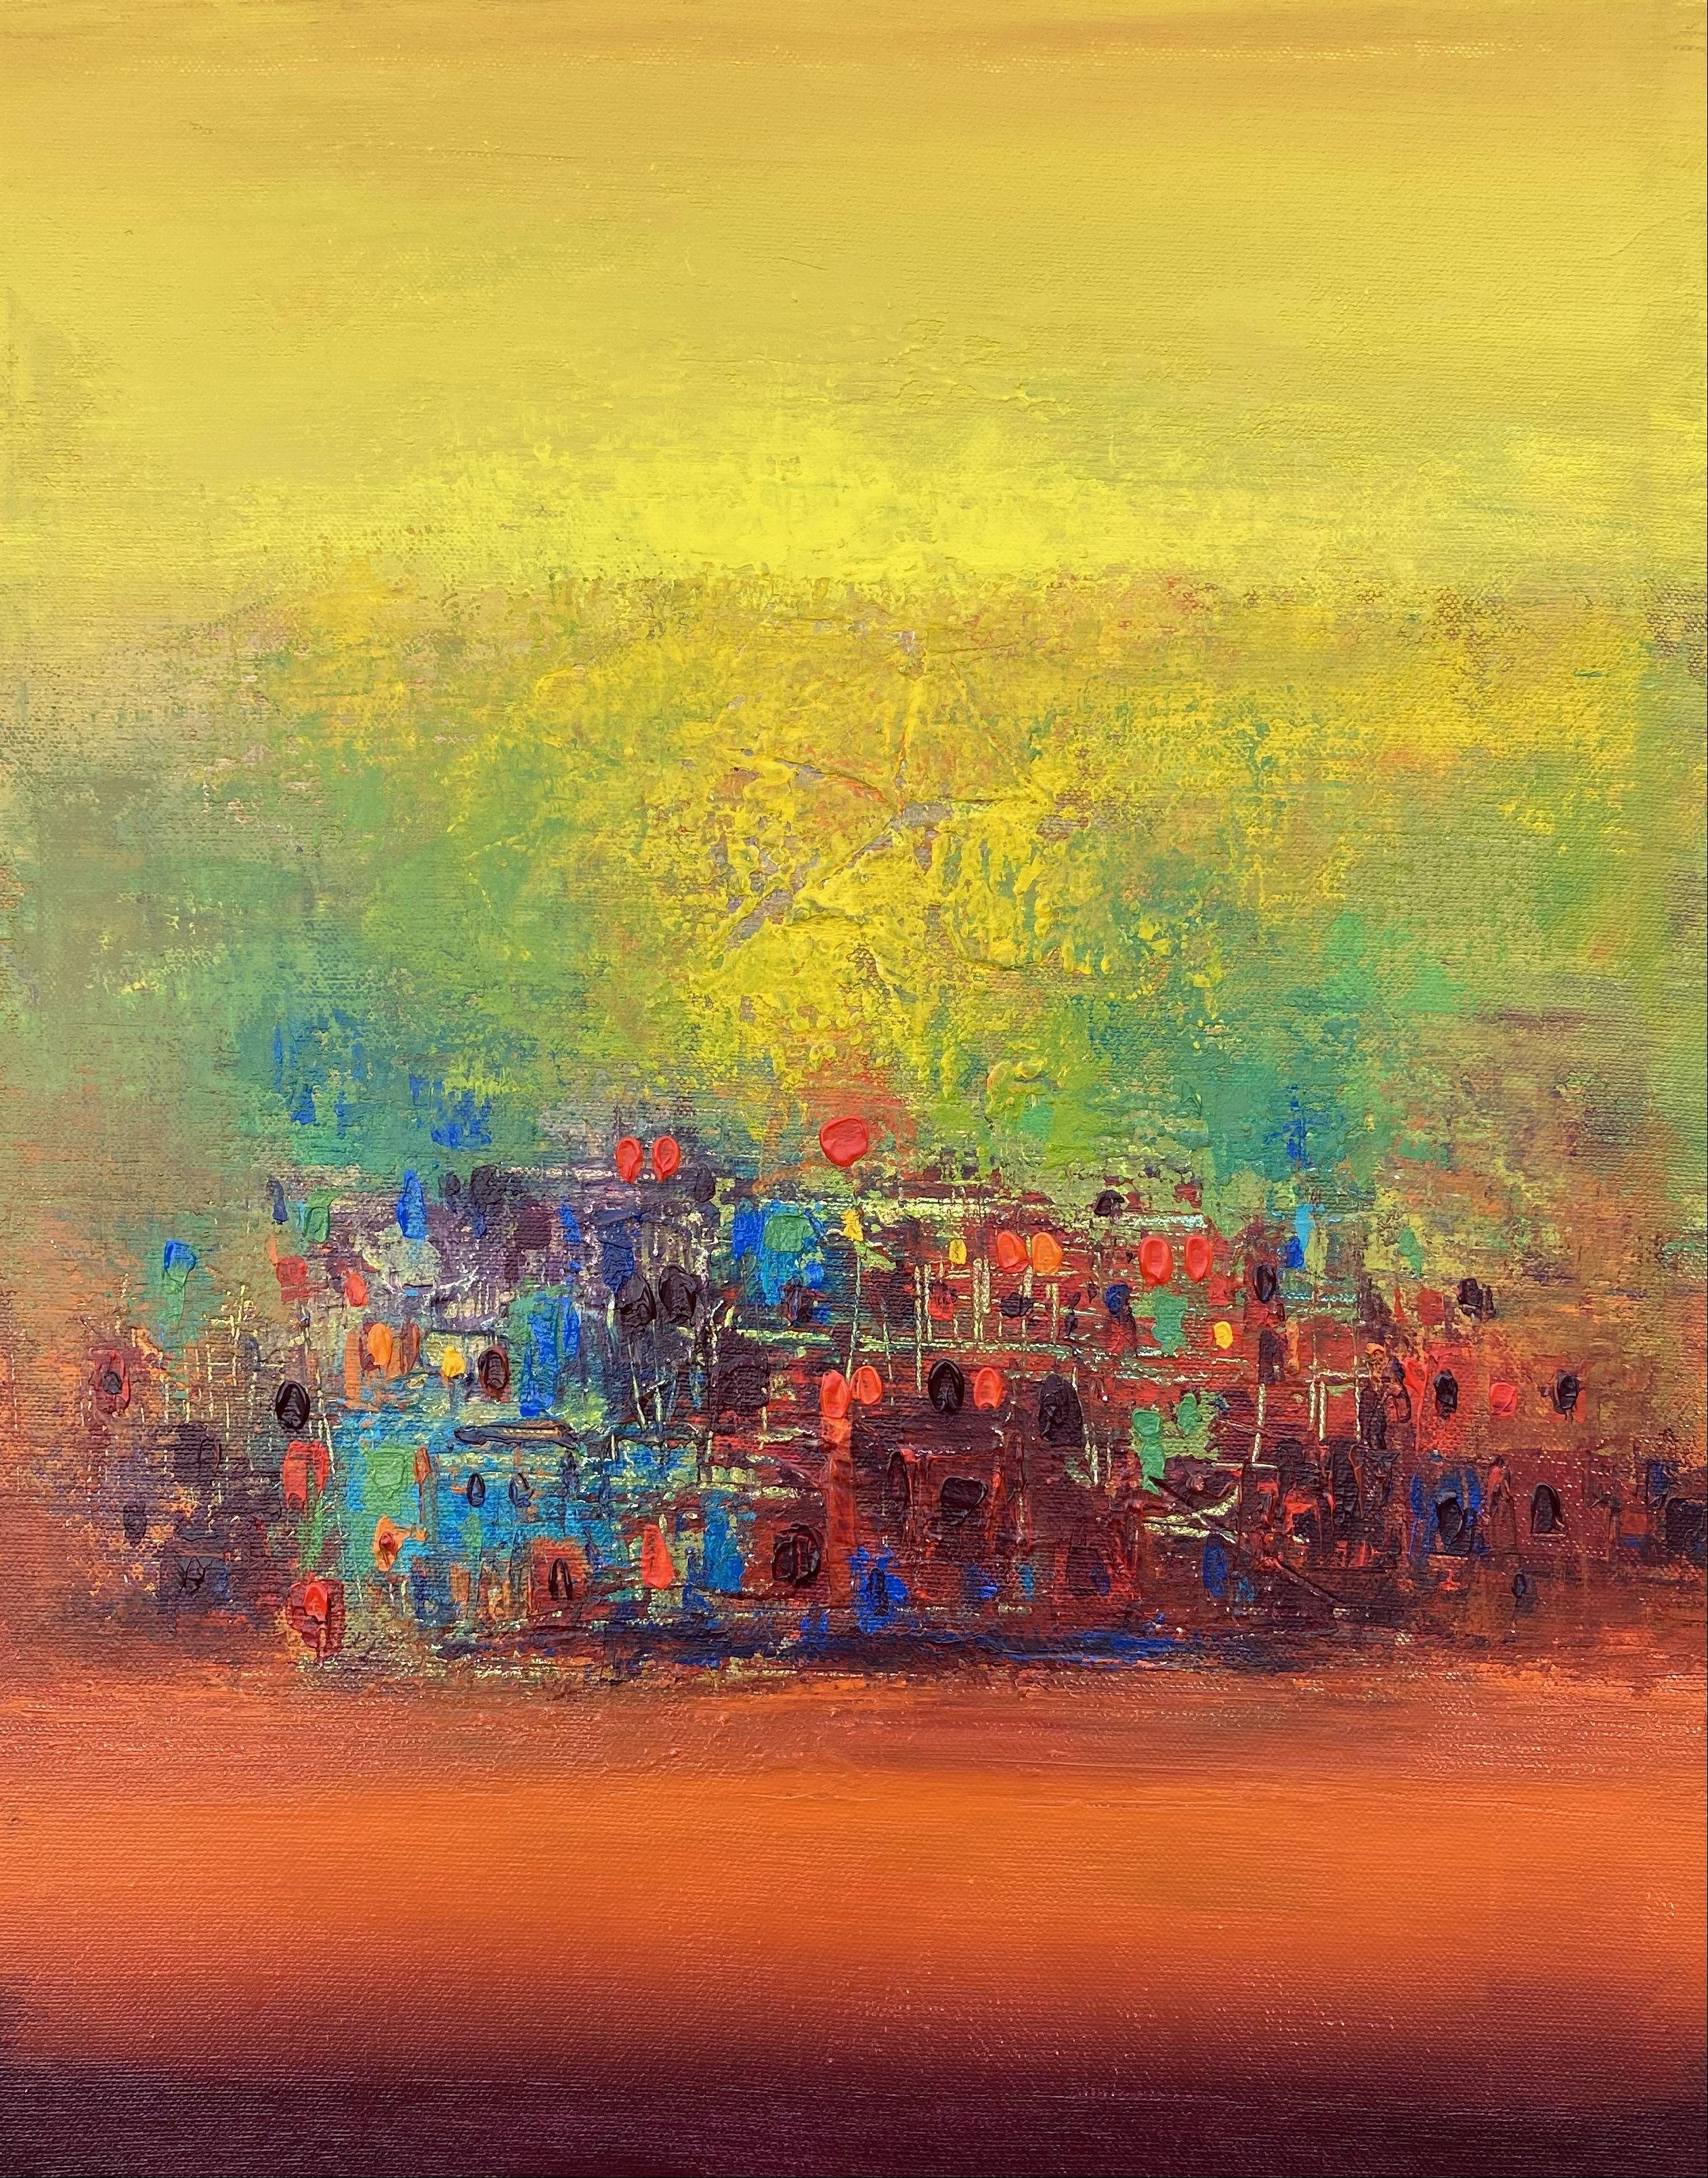 S 20 coucher de soleil, peinture, acrylique sur toile - Painting de Nivas Kanhere